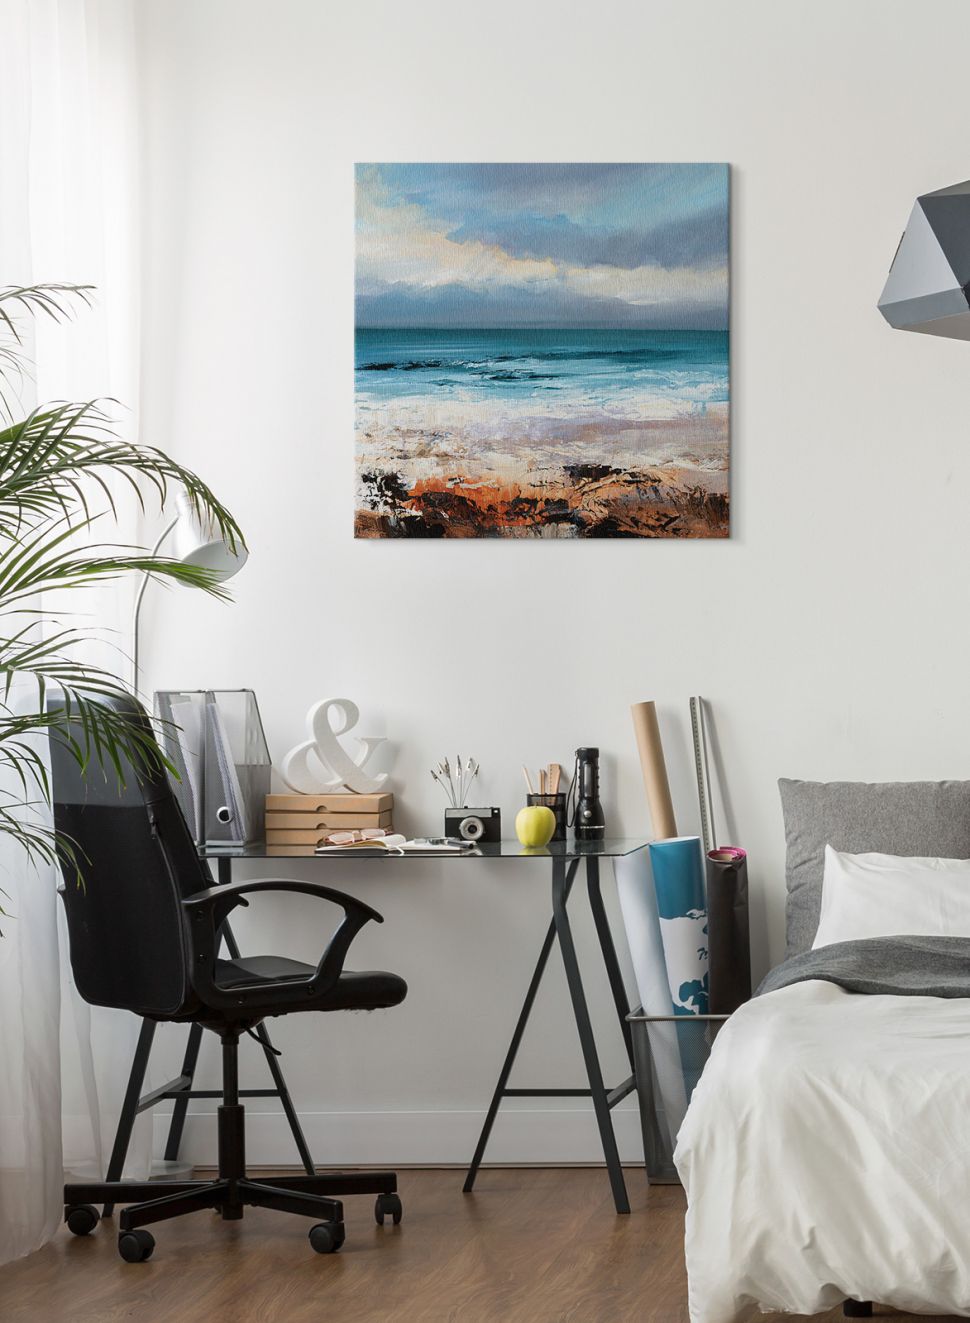 Nowoczesne biuro z wiszącym na ścianie canvasem przedstawiającym morskie wybrzeże